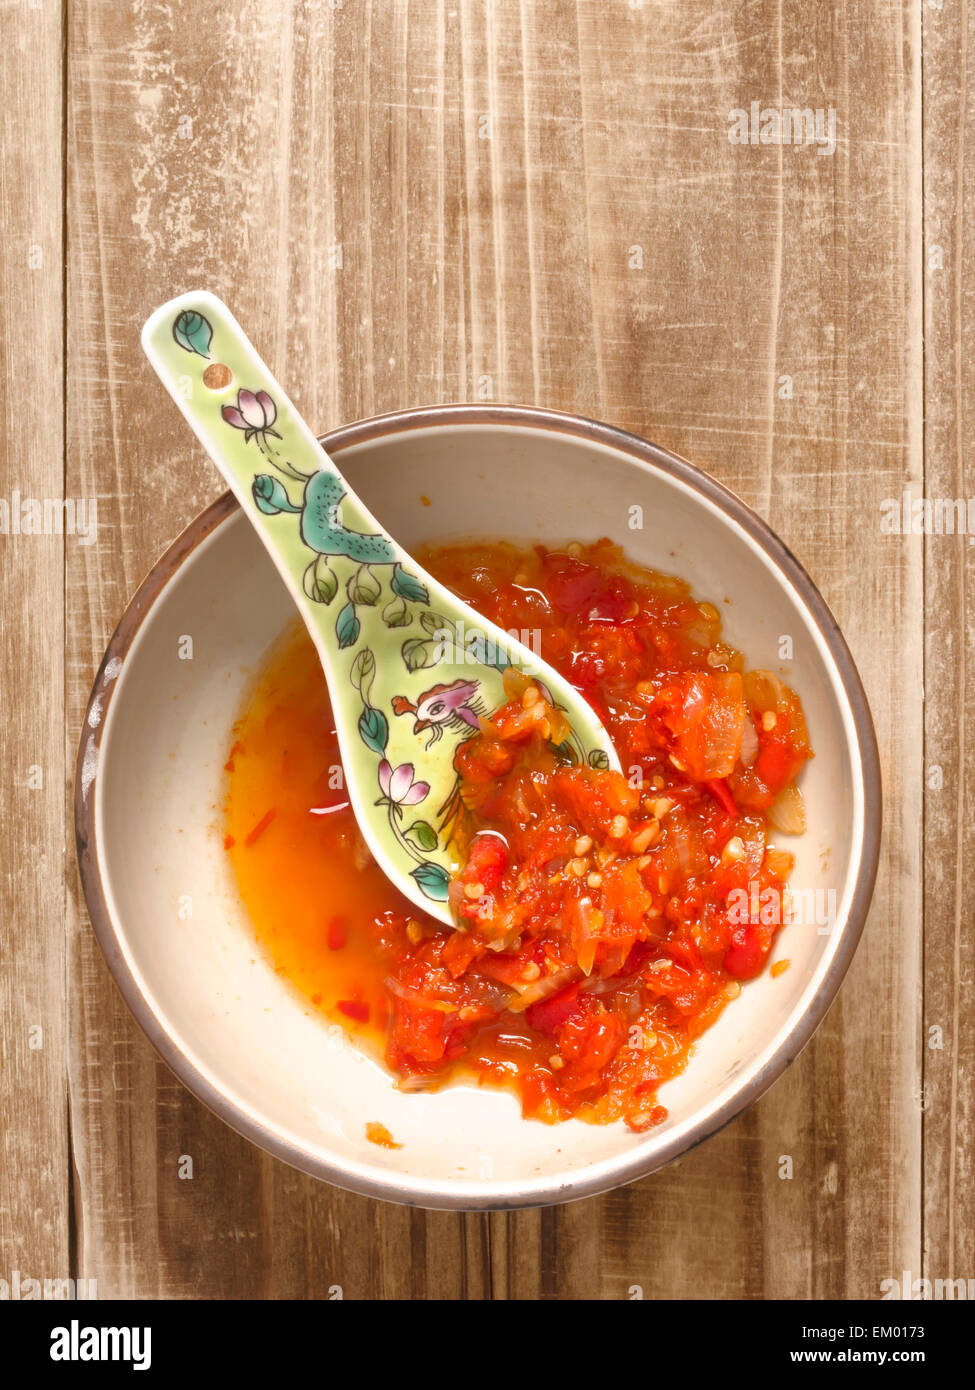 red chili sauce Stock Photo